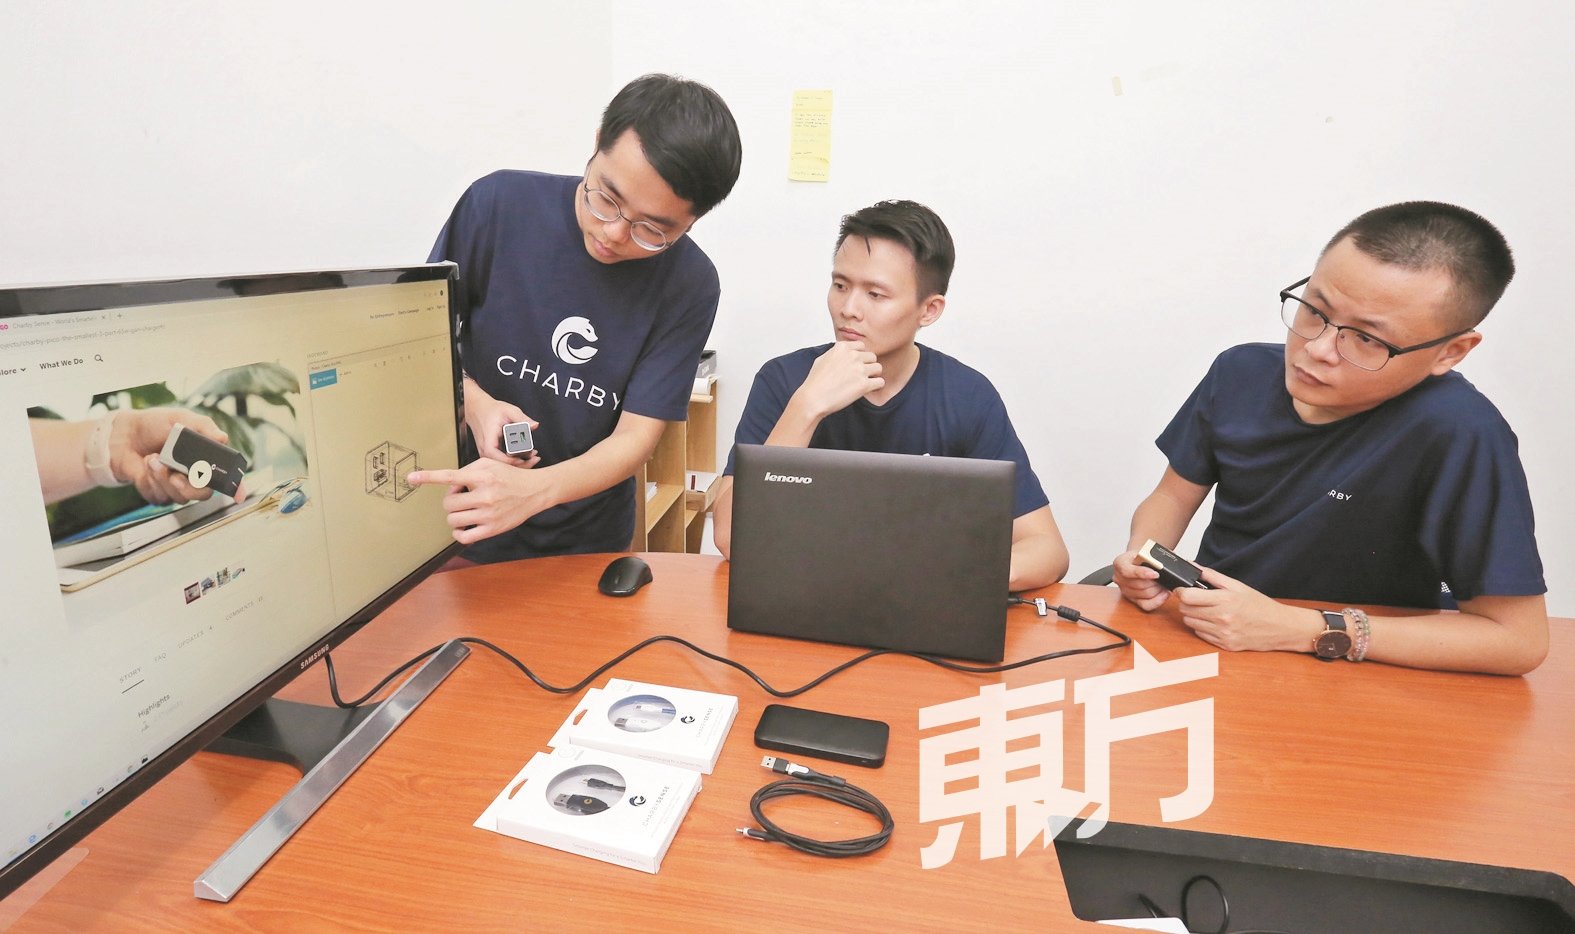 戚盛斐（左起）、戚铭晋及林道雍，自大学时就结识，在发挥创意将点子制作成产品的过程中合作无间。